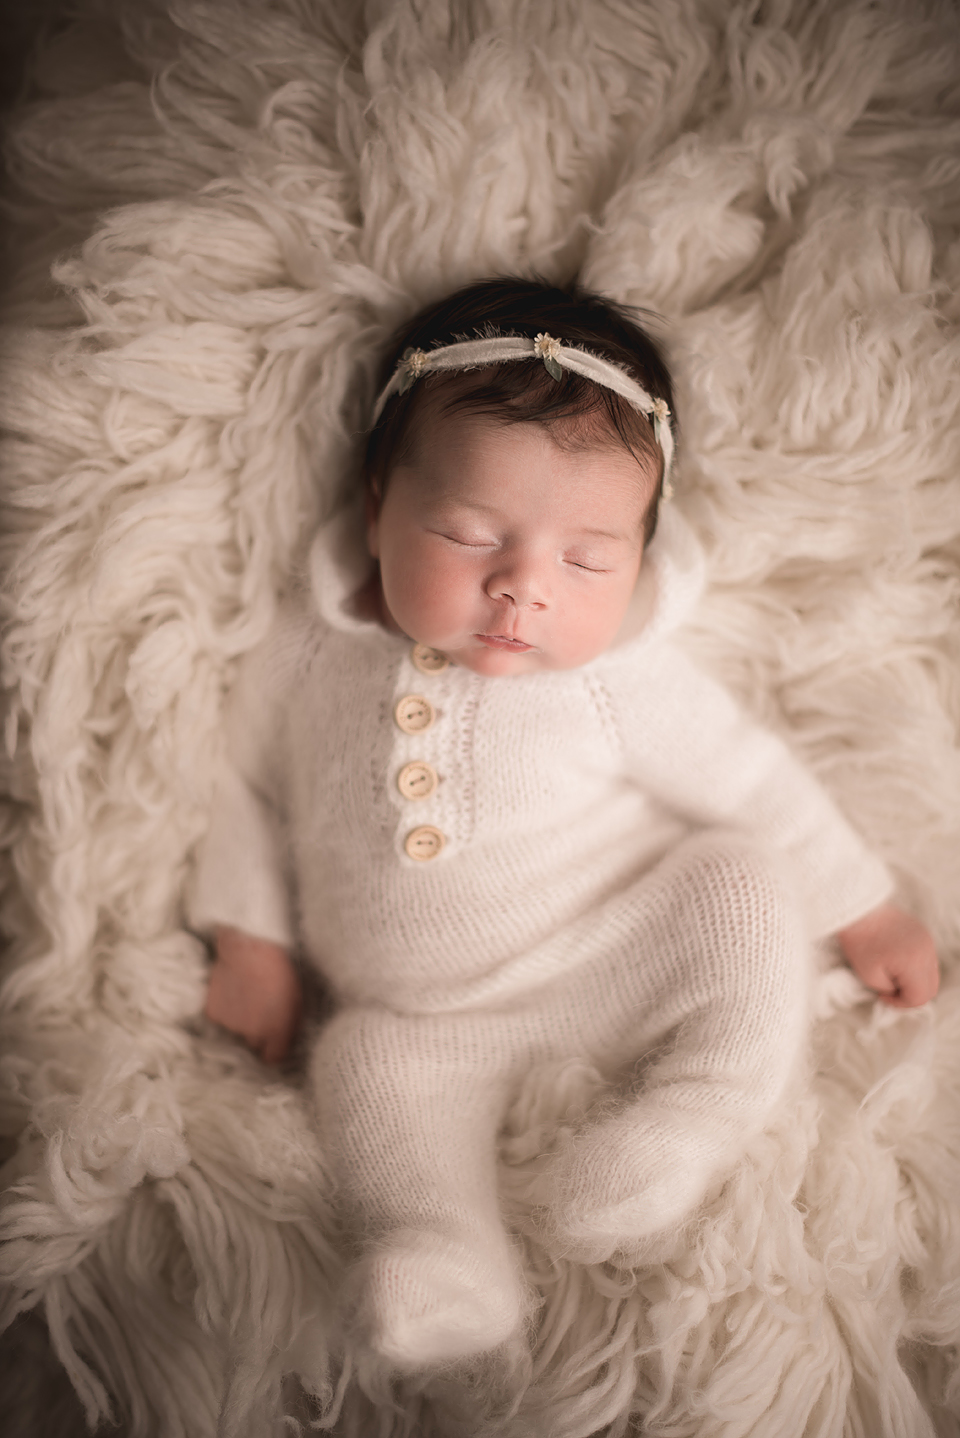 Sleeping Newborn Girl Wearing White Pajamas and Headband